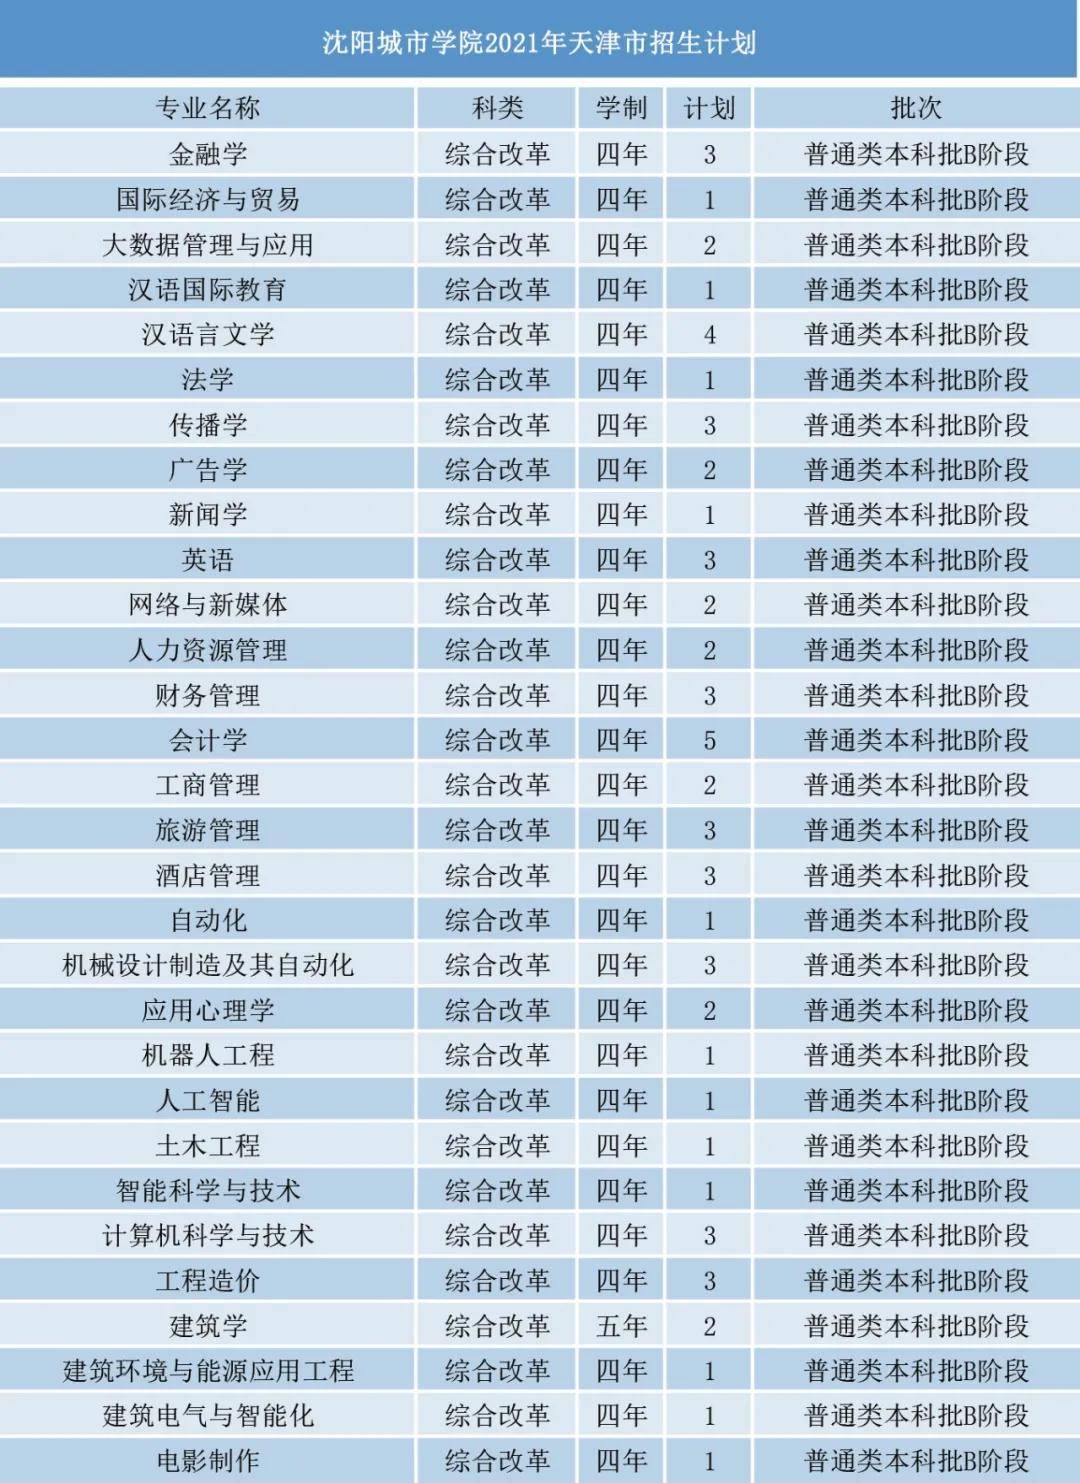 今年,沈阳城市学院面向全国23个省(自治区,直辖市)招生39个本科专业